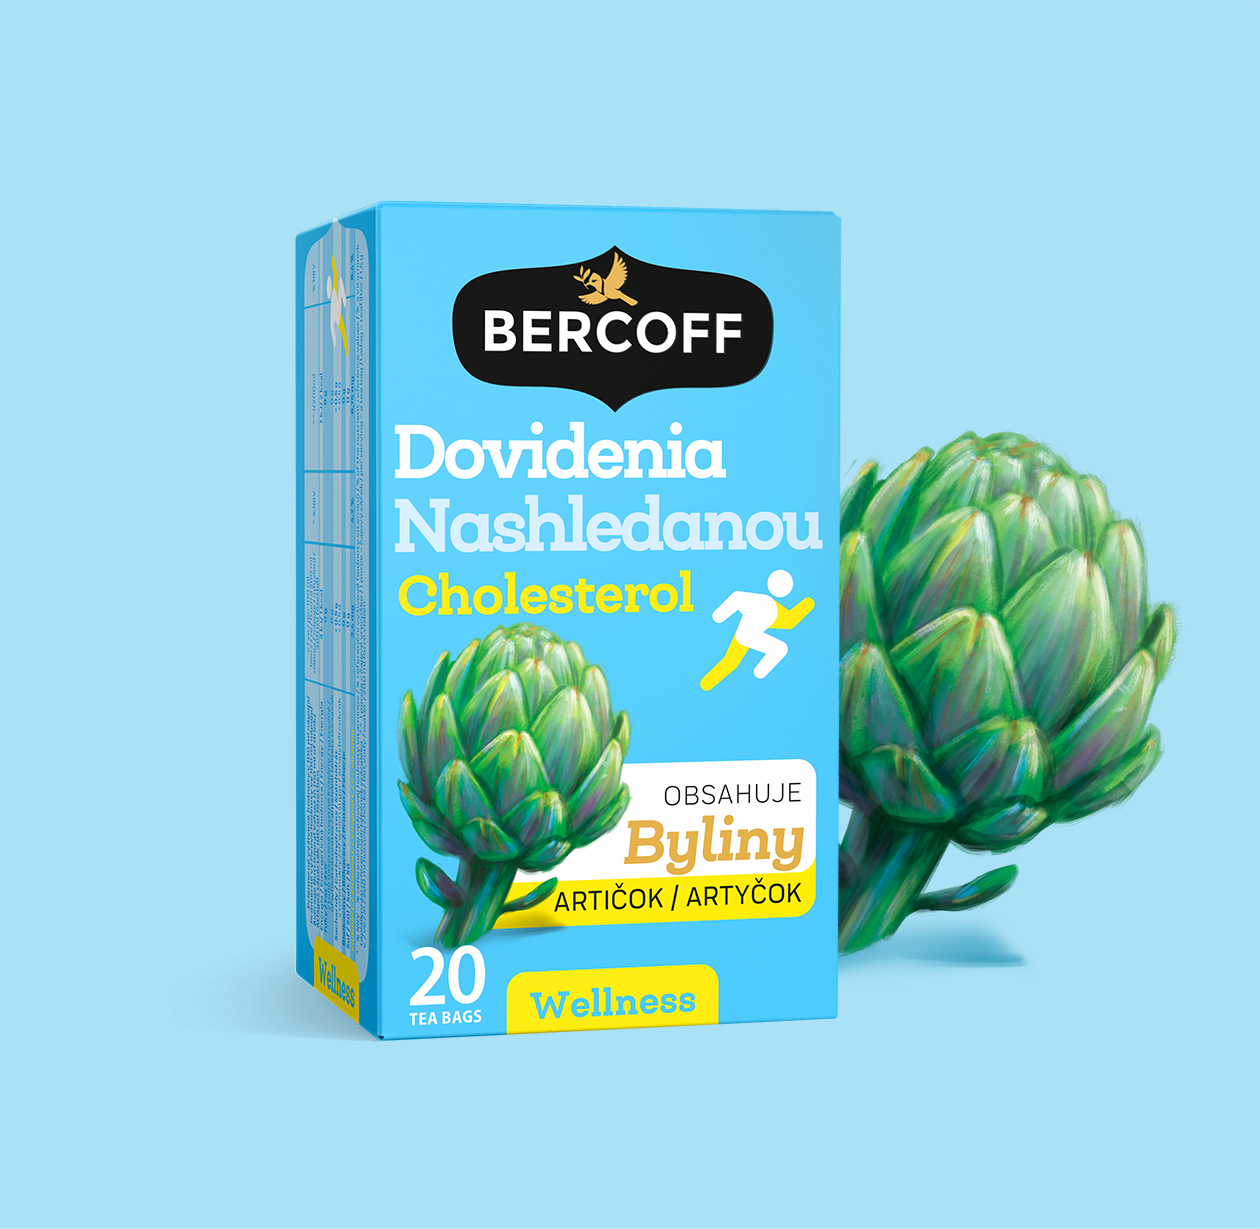 bercoff wellness packaging 03